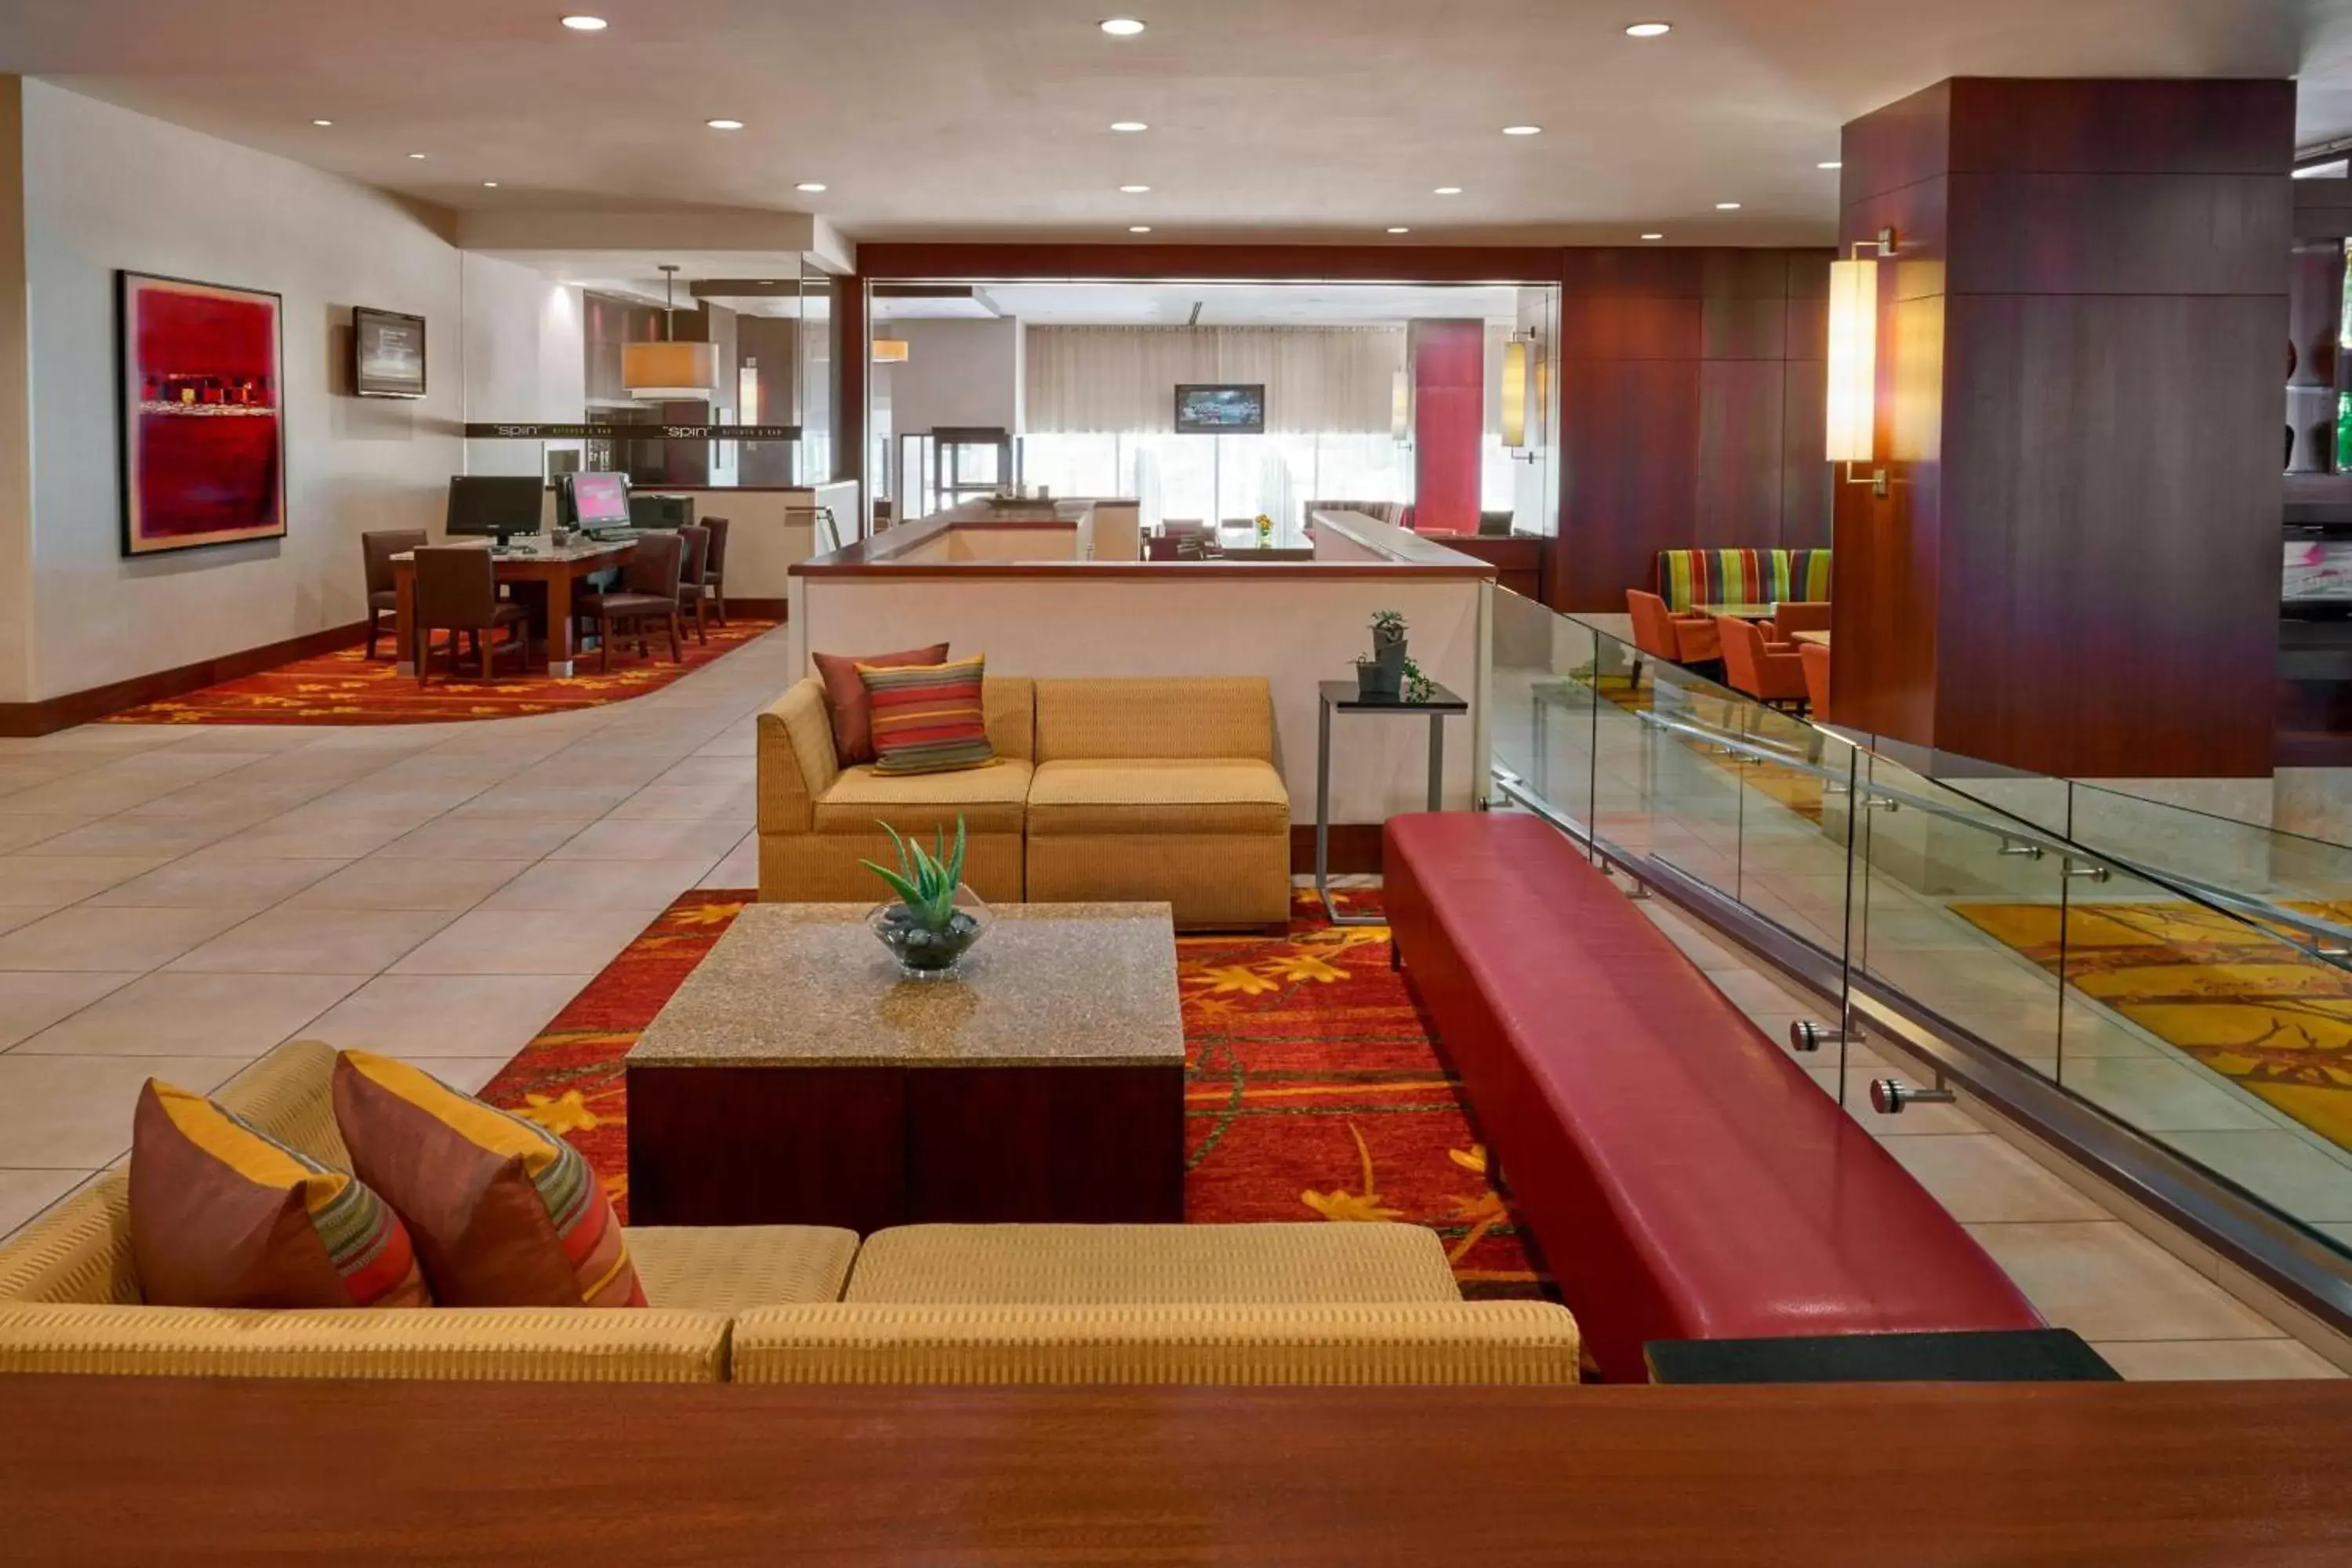 Lobby or reception, Lobby/Reception in Ottawa Marriott Hotel